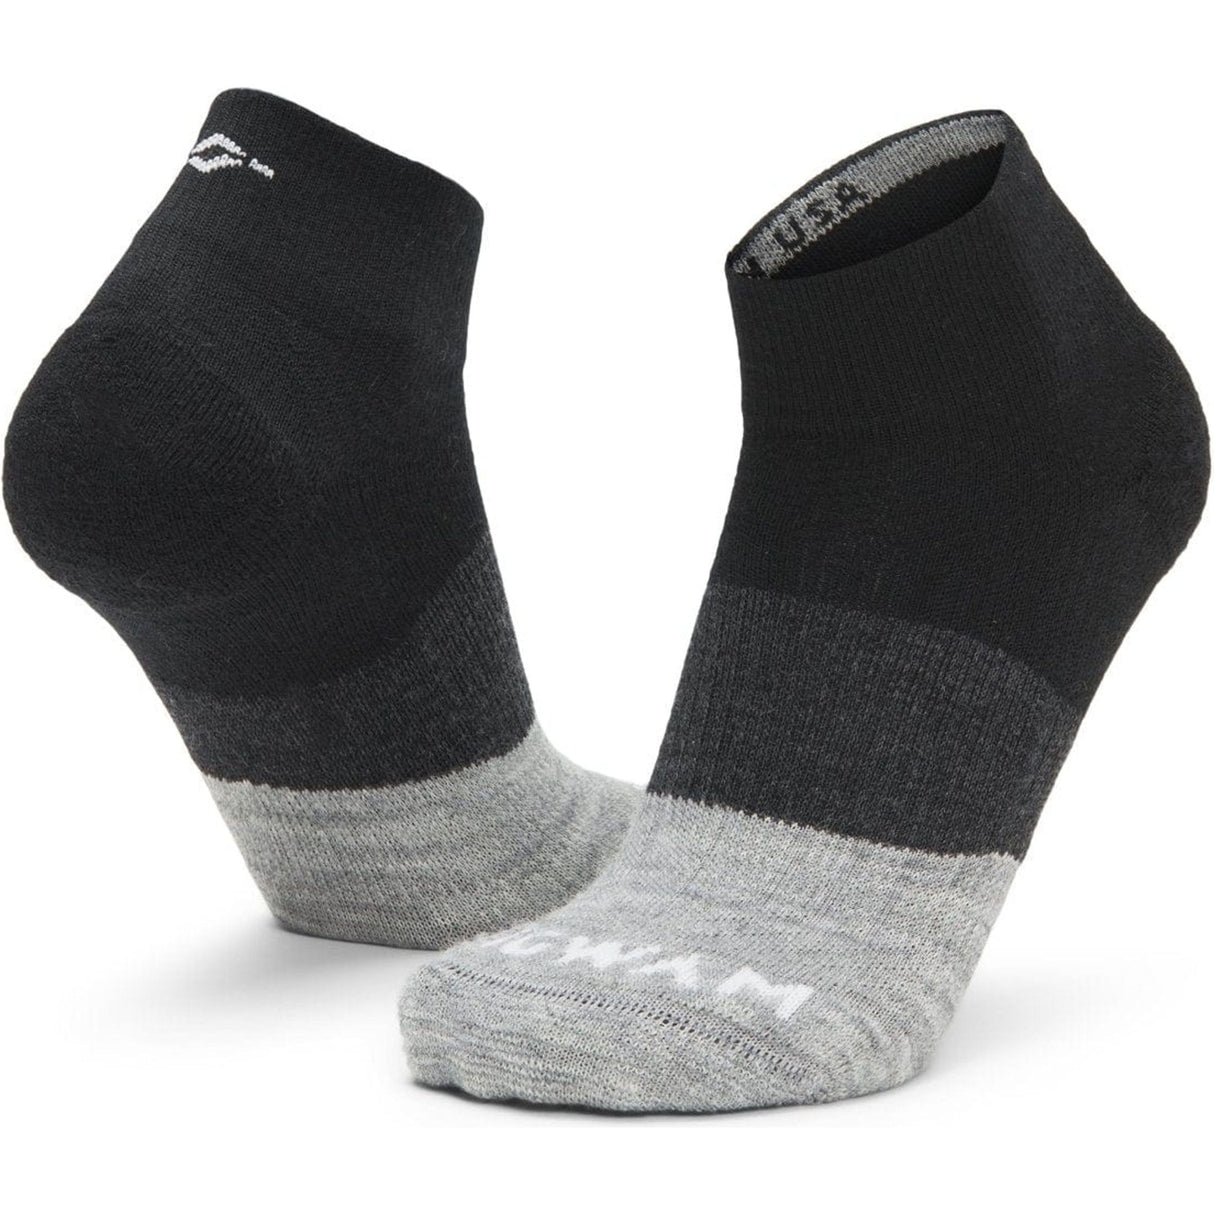 Wigwam Trail Junkie Merino Wool Lightweight Quarter Socks  -  Medium / Black